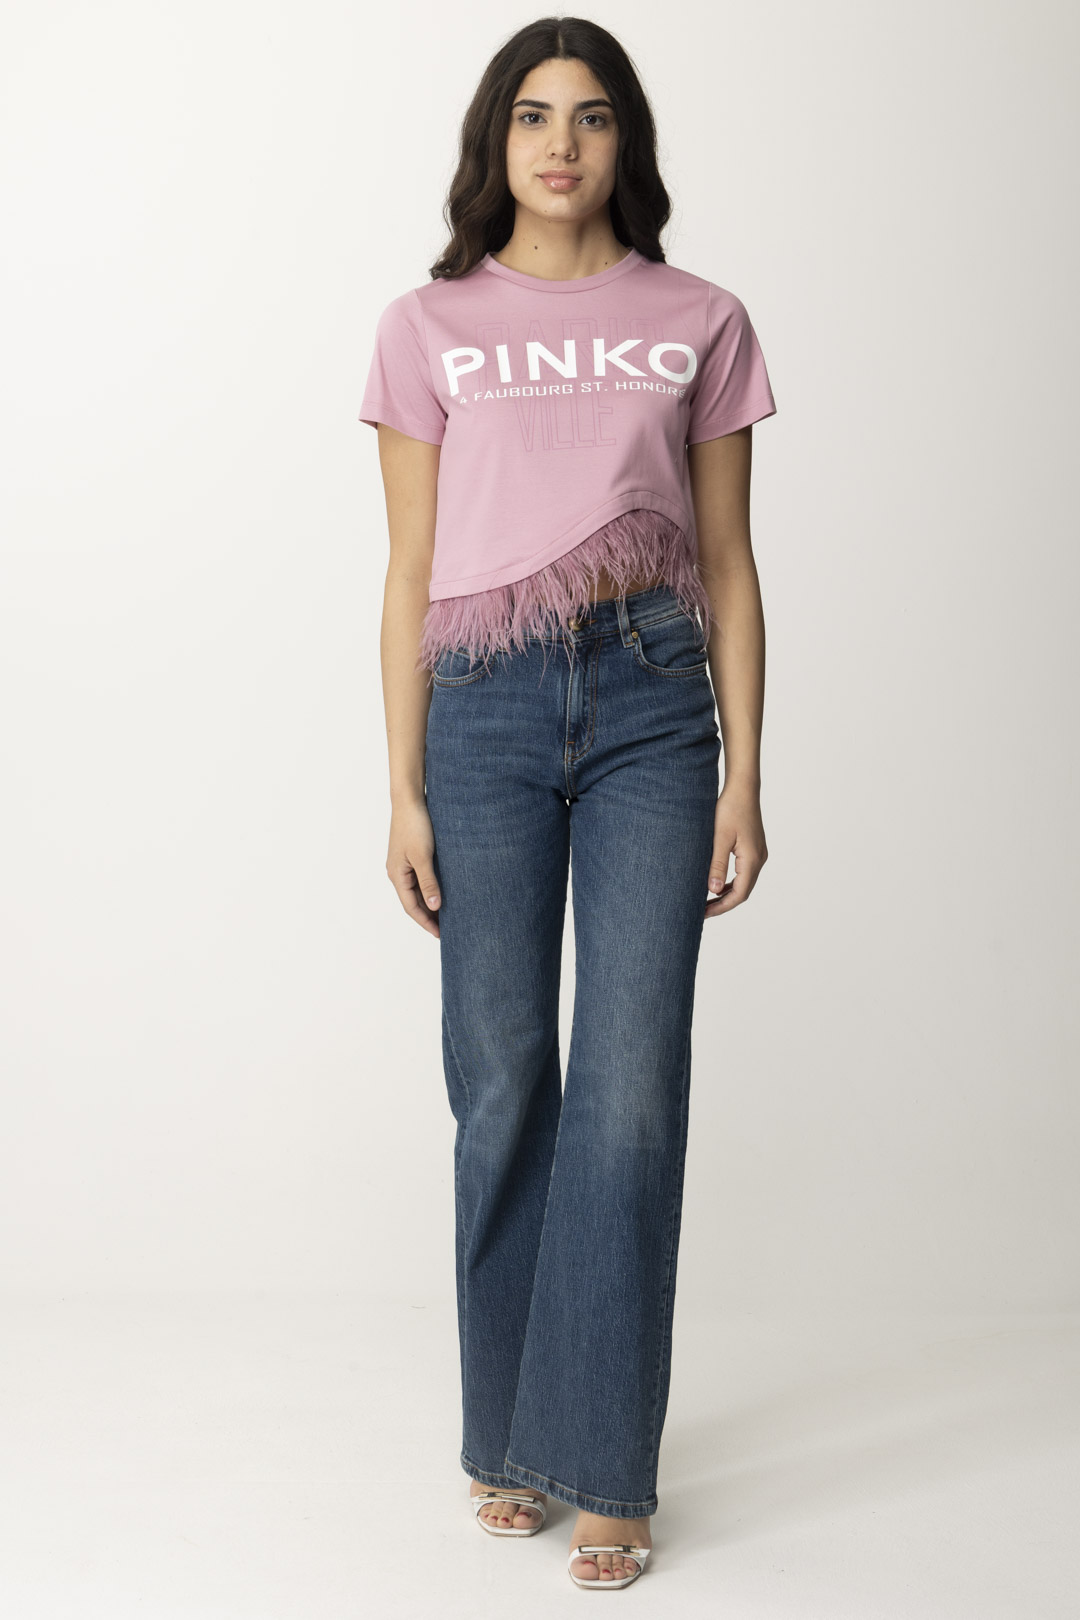 Vorschau: Pinko Wanda-Jeans LAVAGGIO MEDIO CHIARO